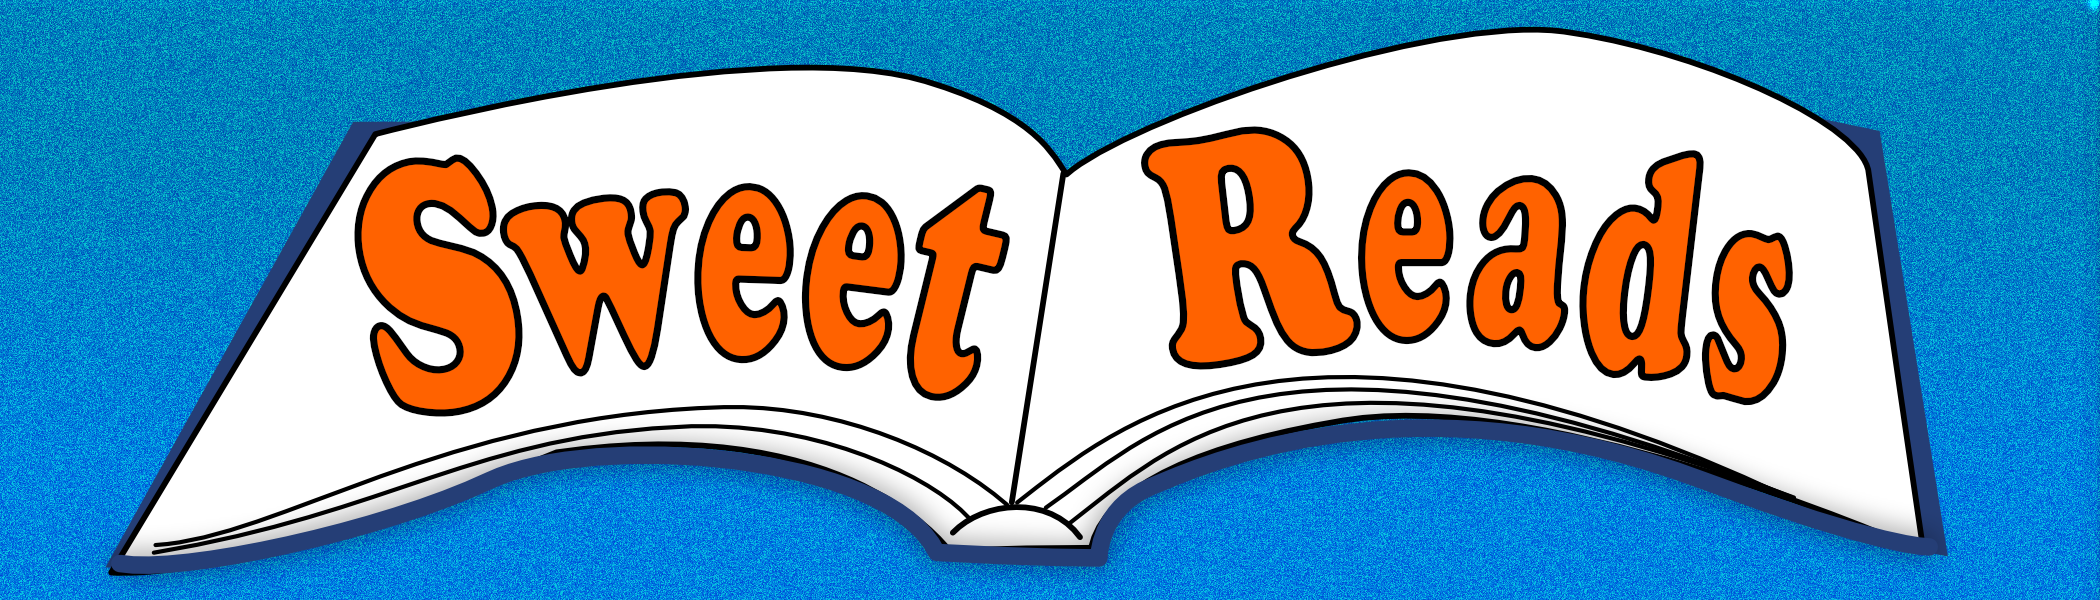 Sweet Reads logo